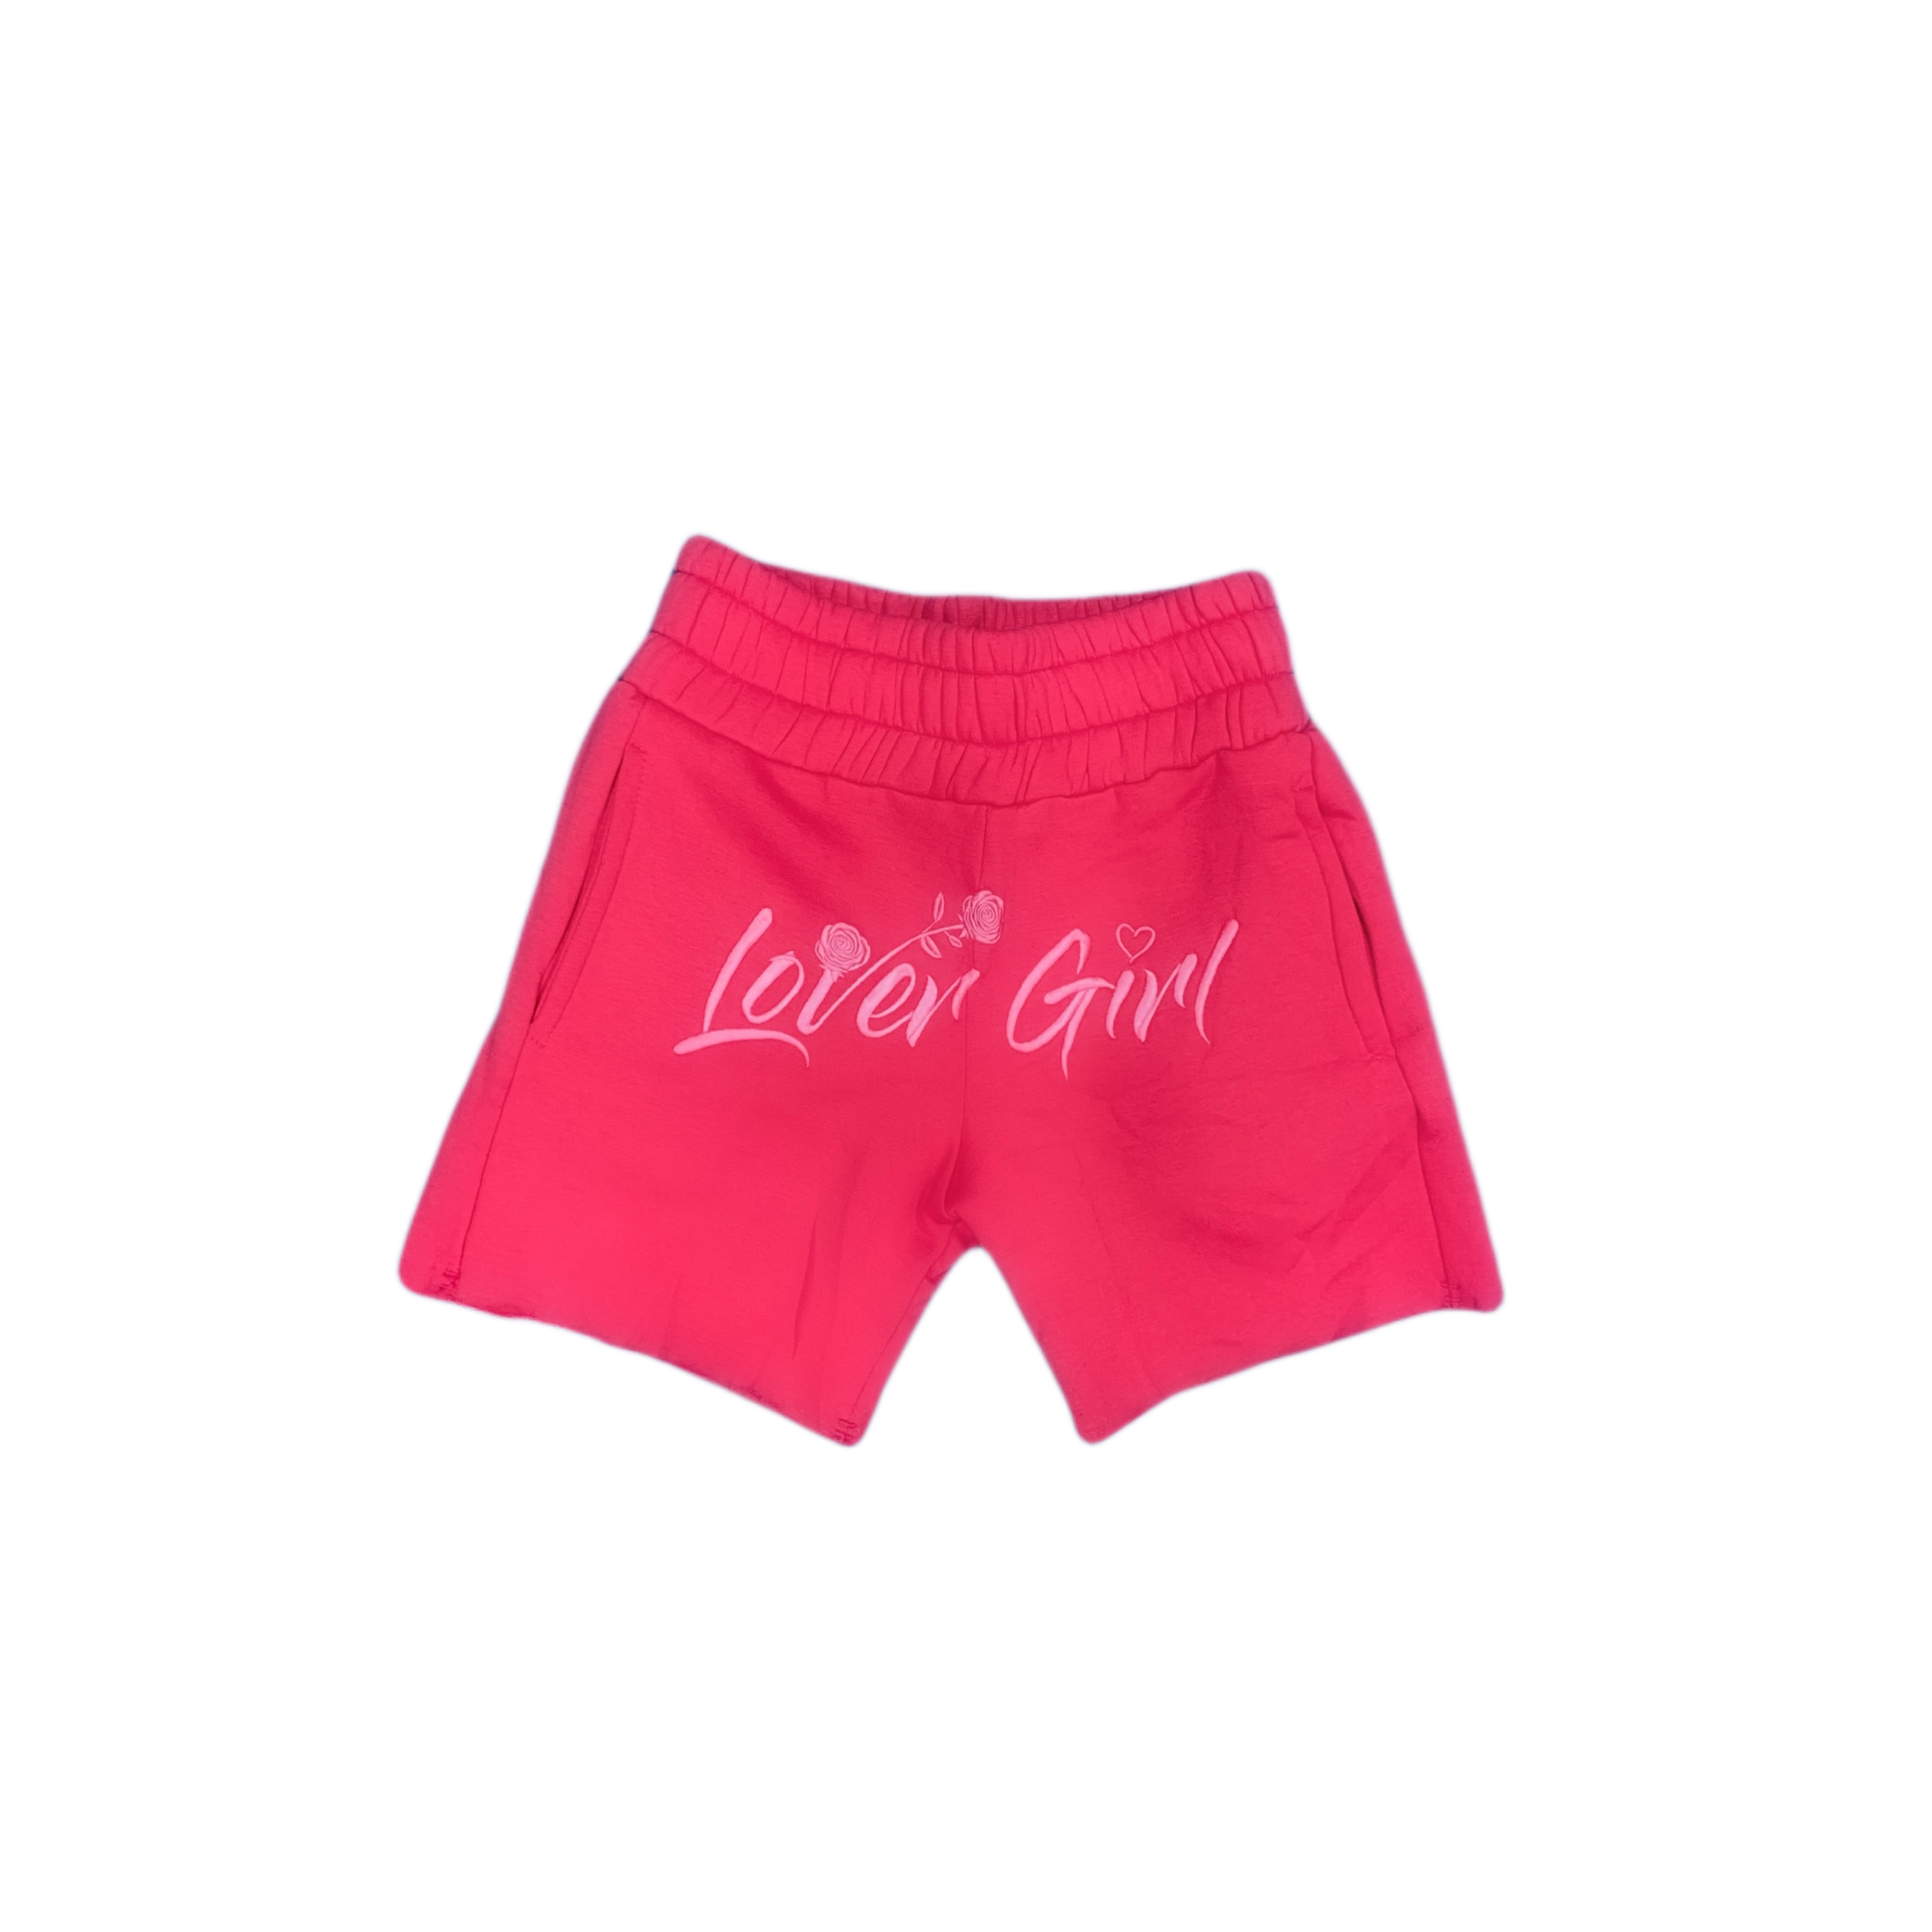 Lover Girl Boxer Shorts